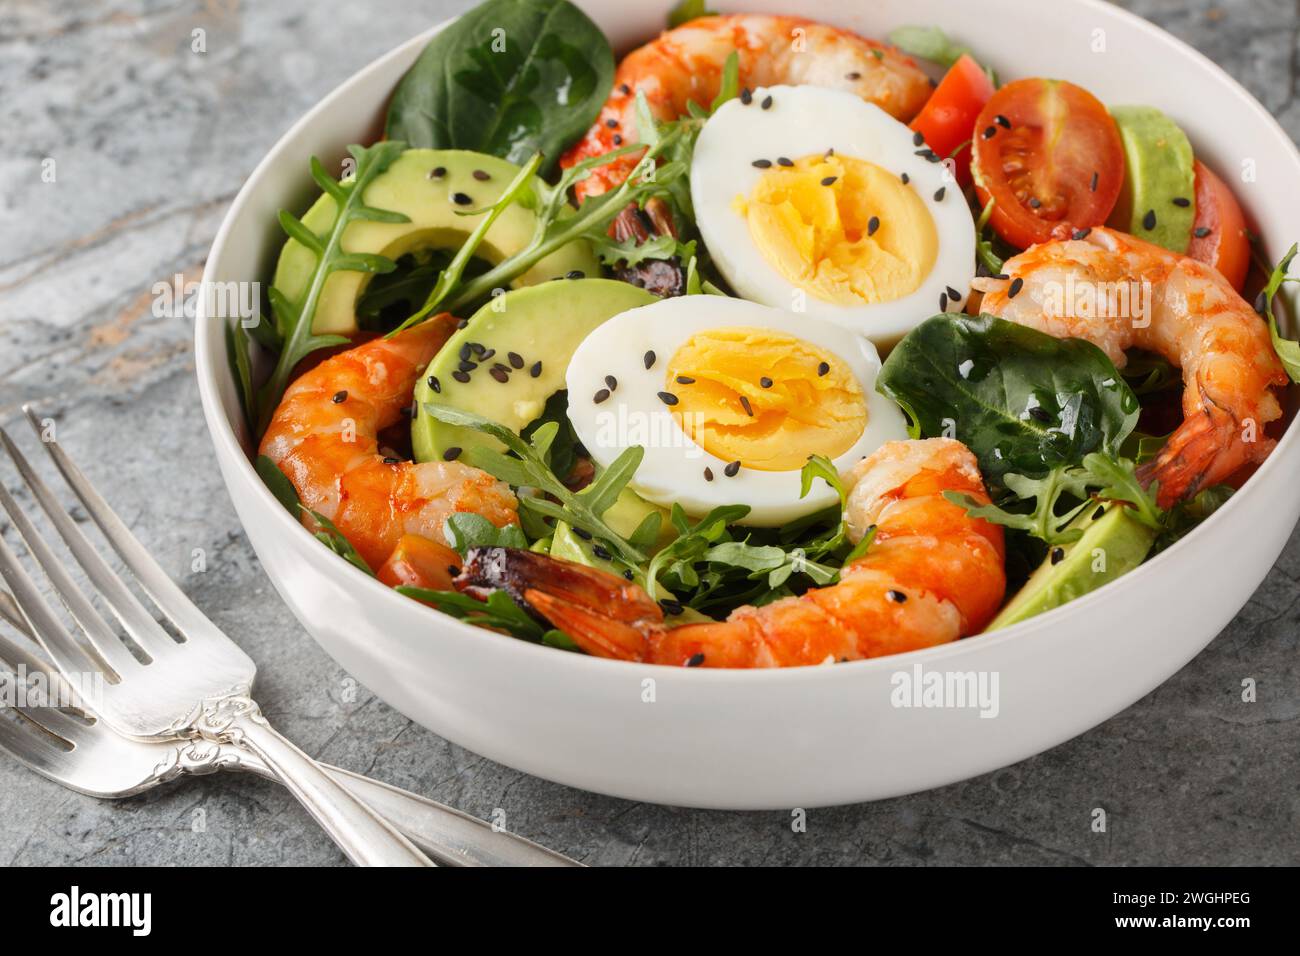 Salade de petit déjeuner équilibrée avec crevettes, avocat, roquette, épinards, tomates et œufs durs gros plan sur un bol sur la table. Horizontal Banque D'Images